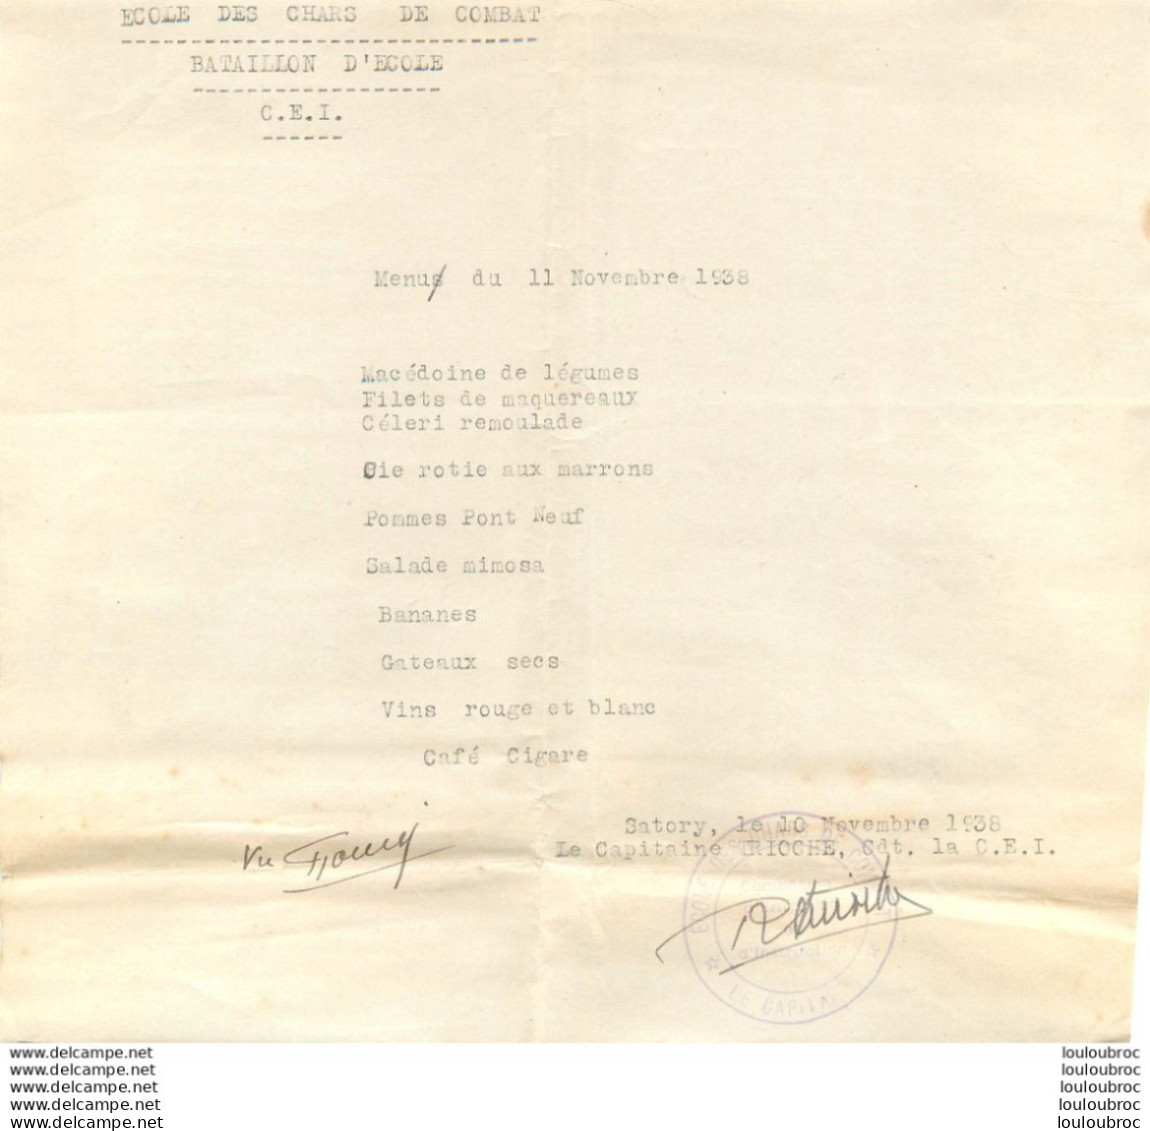 ECOLE DES CHARS DE COMBAT BATAILLON D'ECOLE C.E.I. MENU DU 11 NOVEMBRE 1938 SIGNE DU CAPITAINE TRICOHE FORMAT 21X19CM - Other & Unclassified